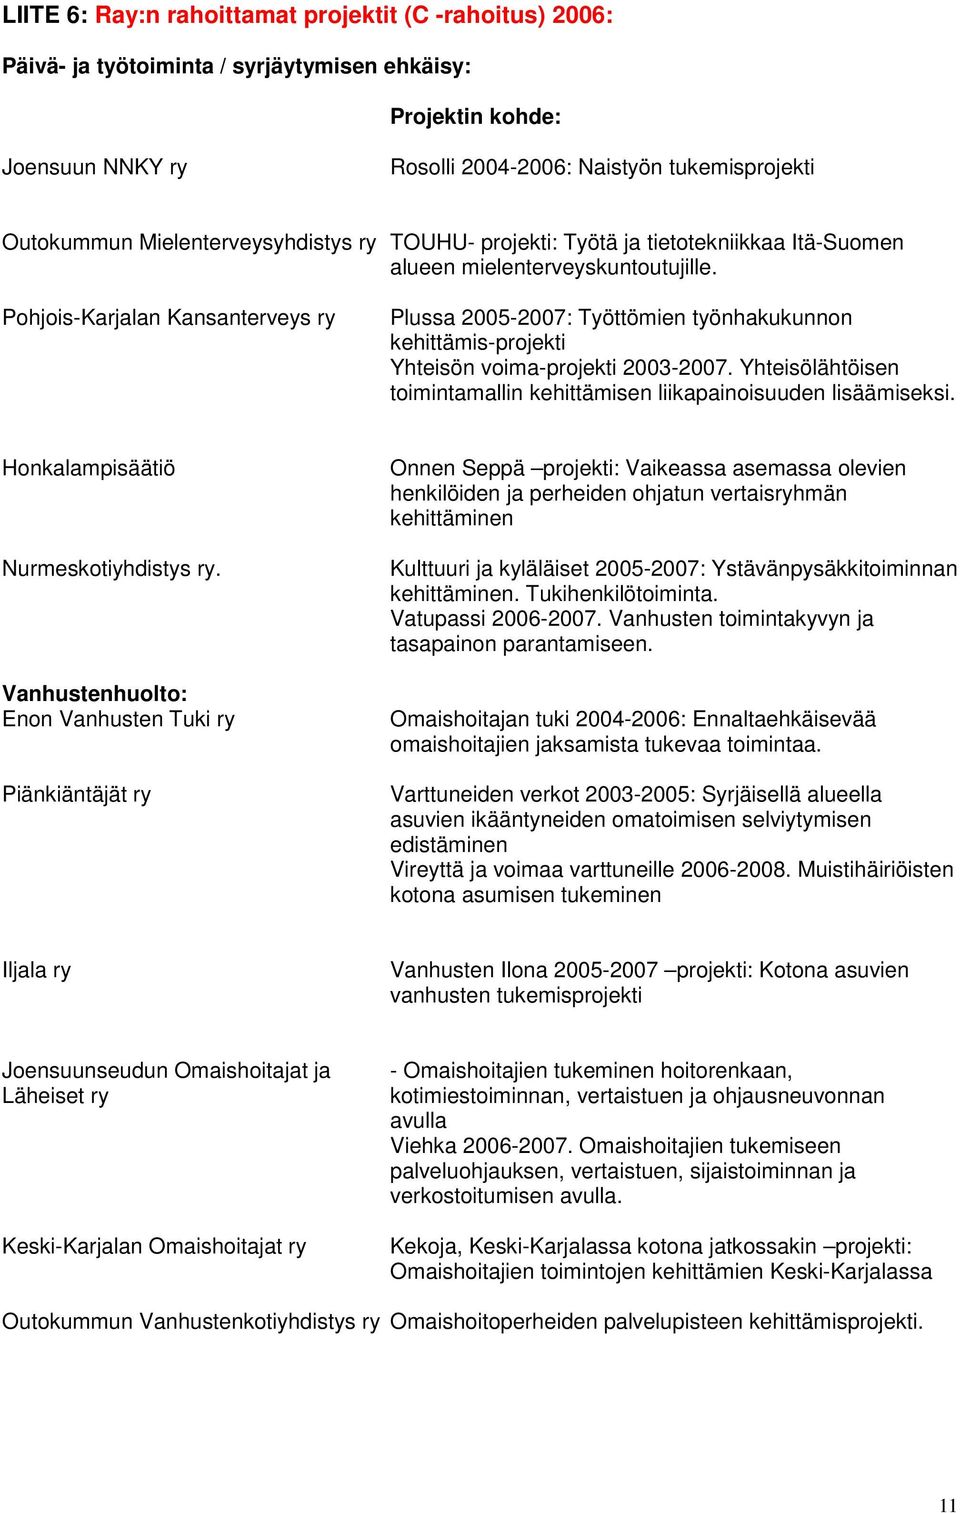 Pohjois-Karjalan Kansanterveys ry Plussa 2005-2007: Työttömien työnhakukunnon kehittämis-projekti Yhteisön voima-projekti 2003-2007.